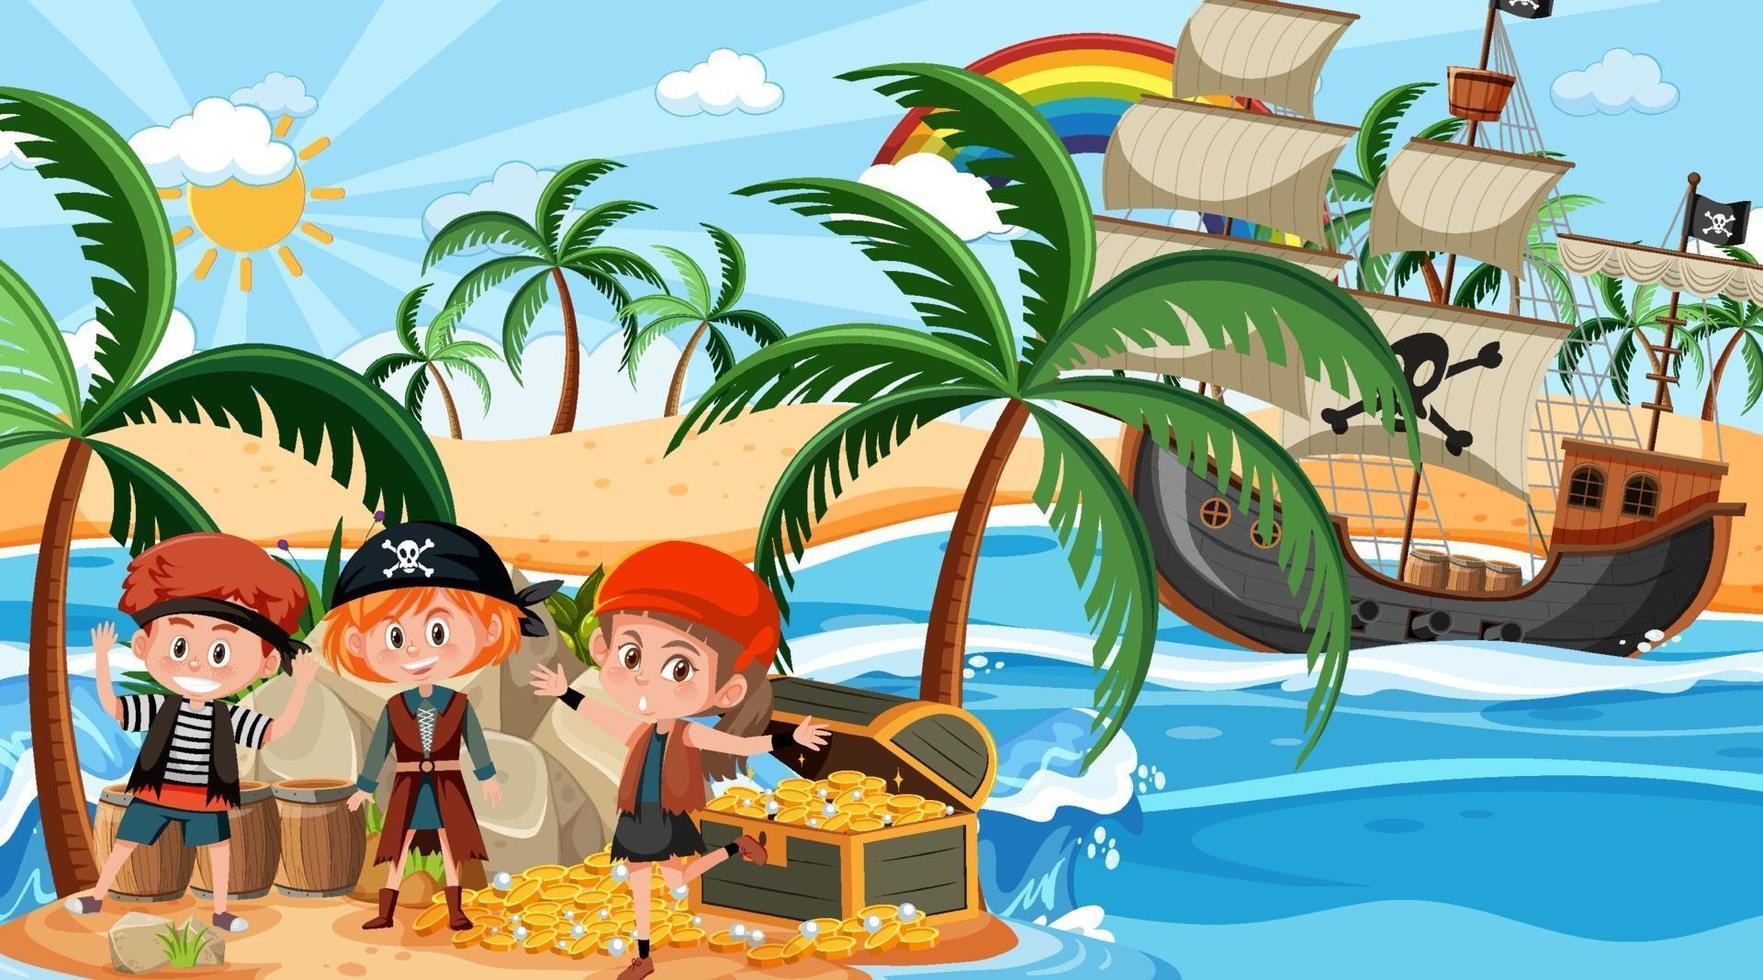 escena de la isla del tesoro durante el día con niños piratas vector